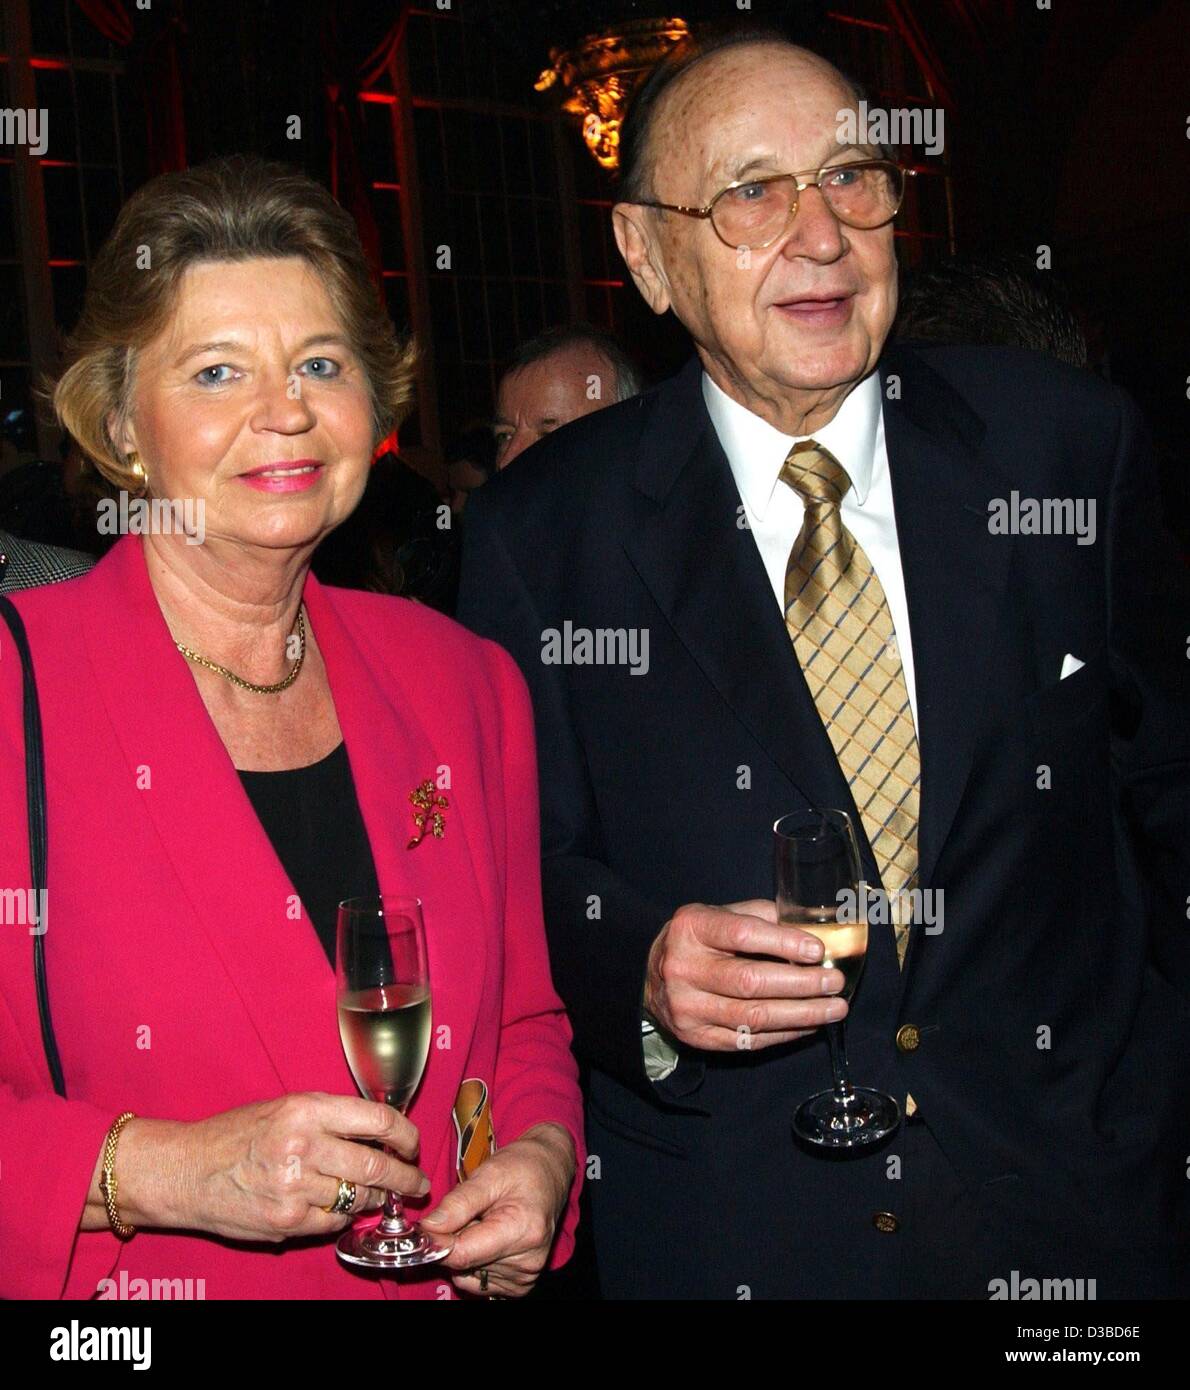 (Dpa) - El ex ministro alemán de Relaciones Exteriores Hans-Dietrich Genscher y su esposa Barbara retratada en el llamado "Partido Zuckerhut" (pan de azúcar) por el productor de confitería Lambertz, Colonia, Alemania, el 27 de enero de 2003. El político alemán había sido presidente del partido liberal alemán FDP desde 1974 Foto de stock